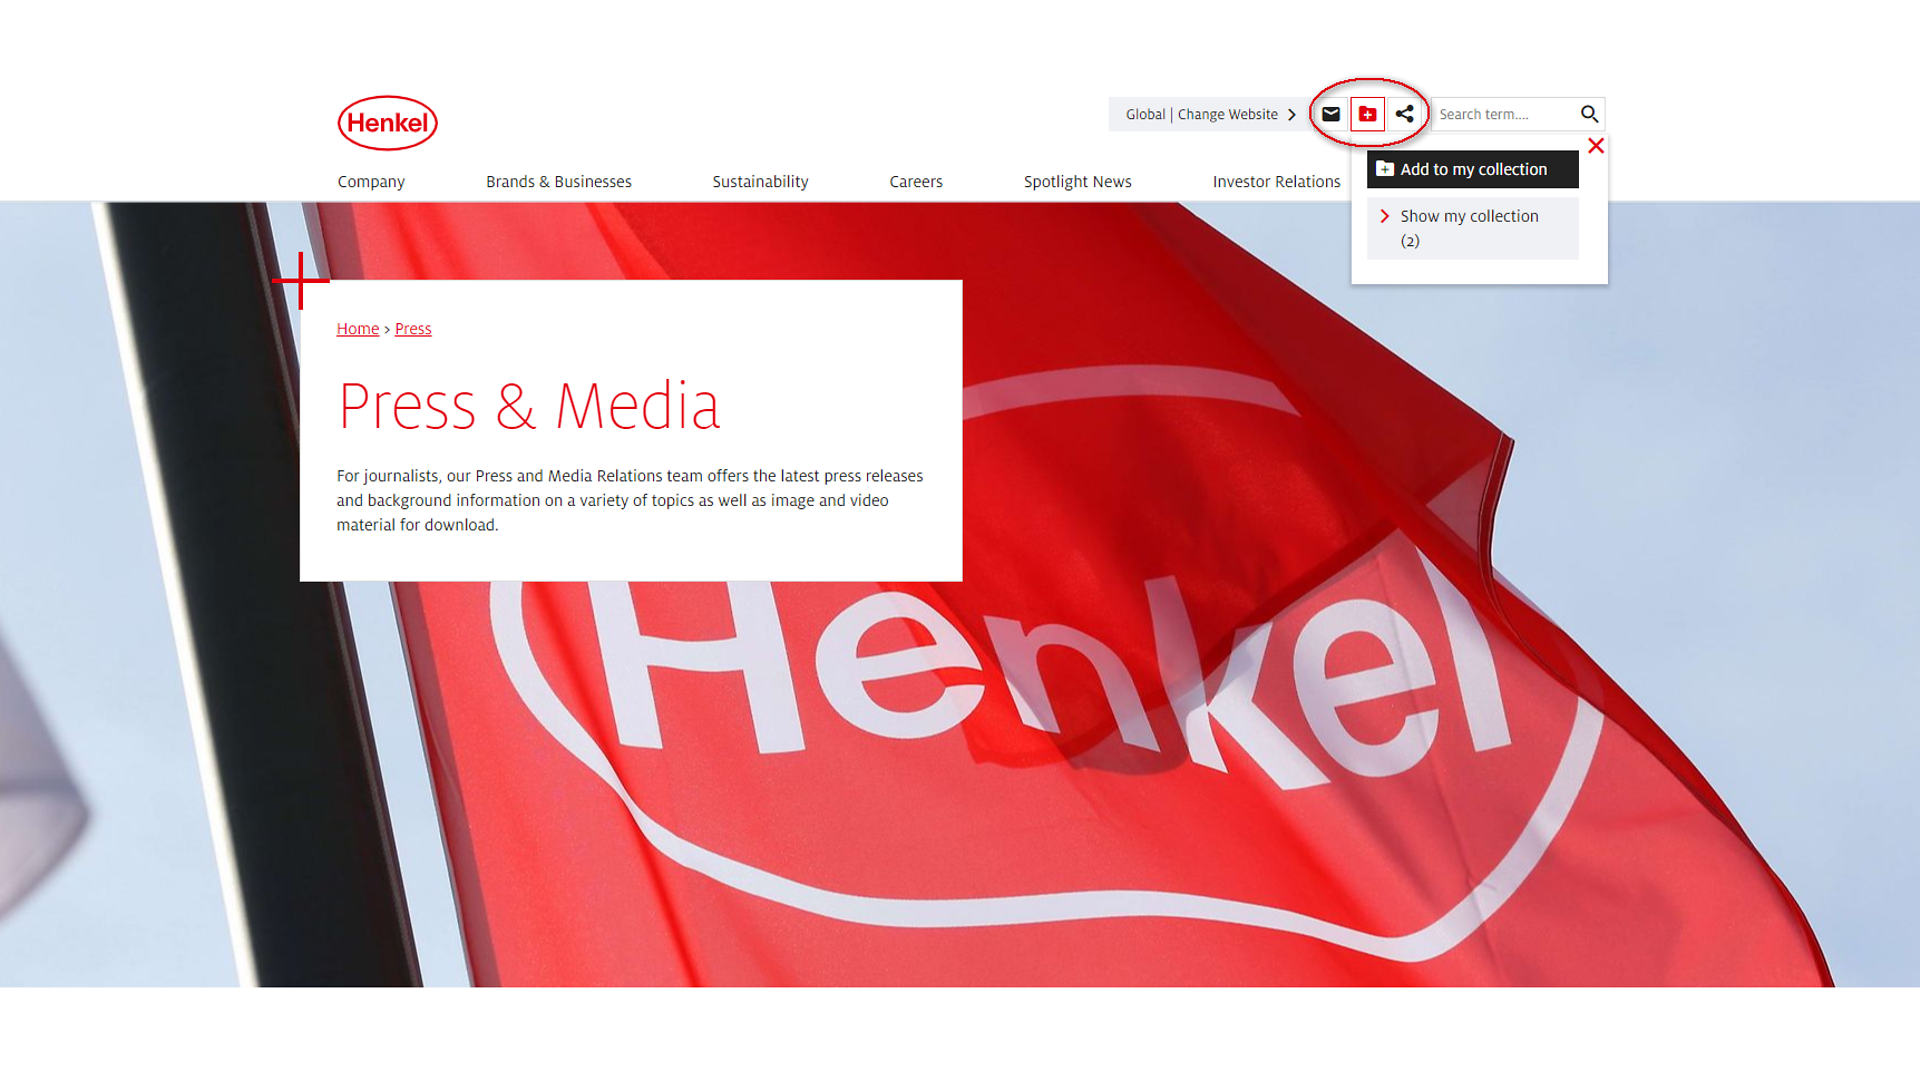 
Переглядаючи веб-сайт Henkel, скористайтеся значком 